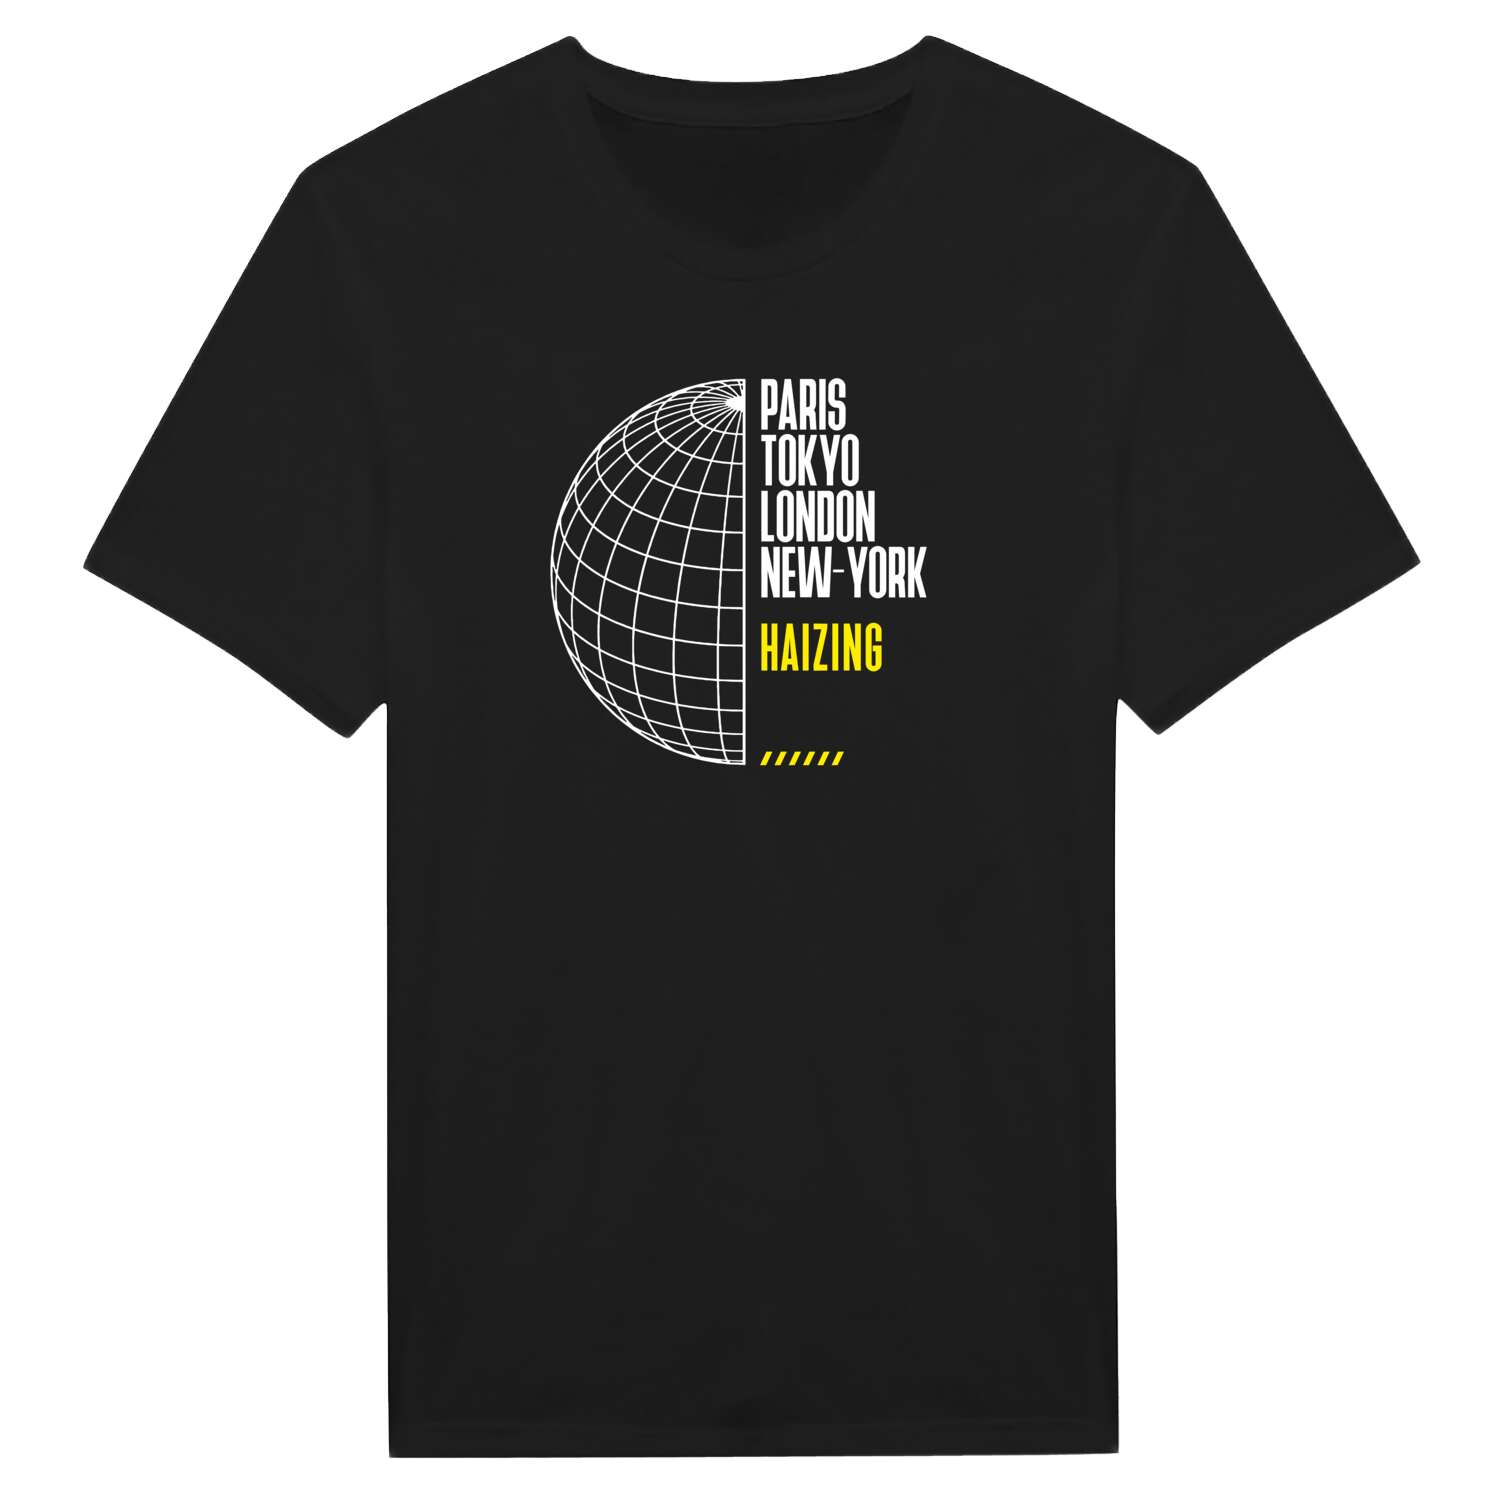 Haizing T-Shirt »Paris Tokyo London«